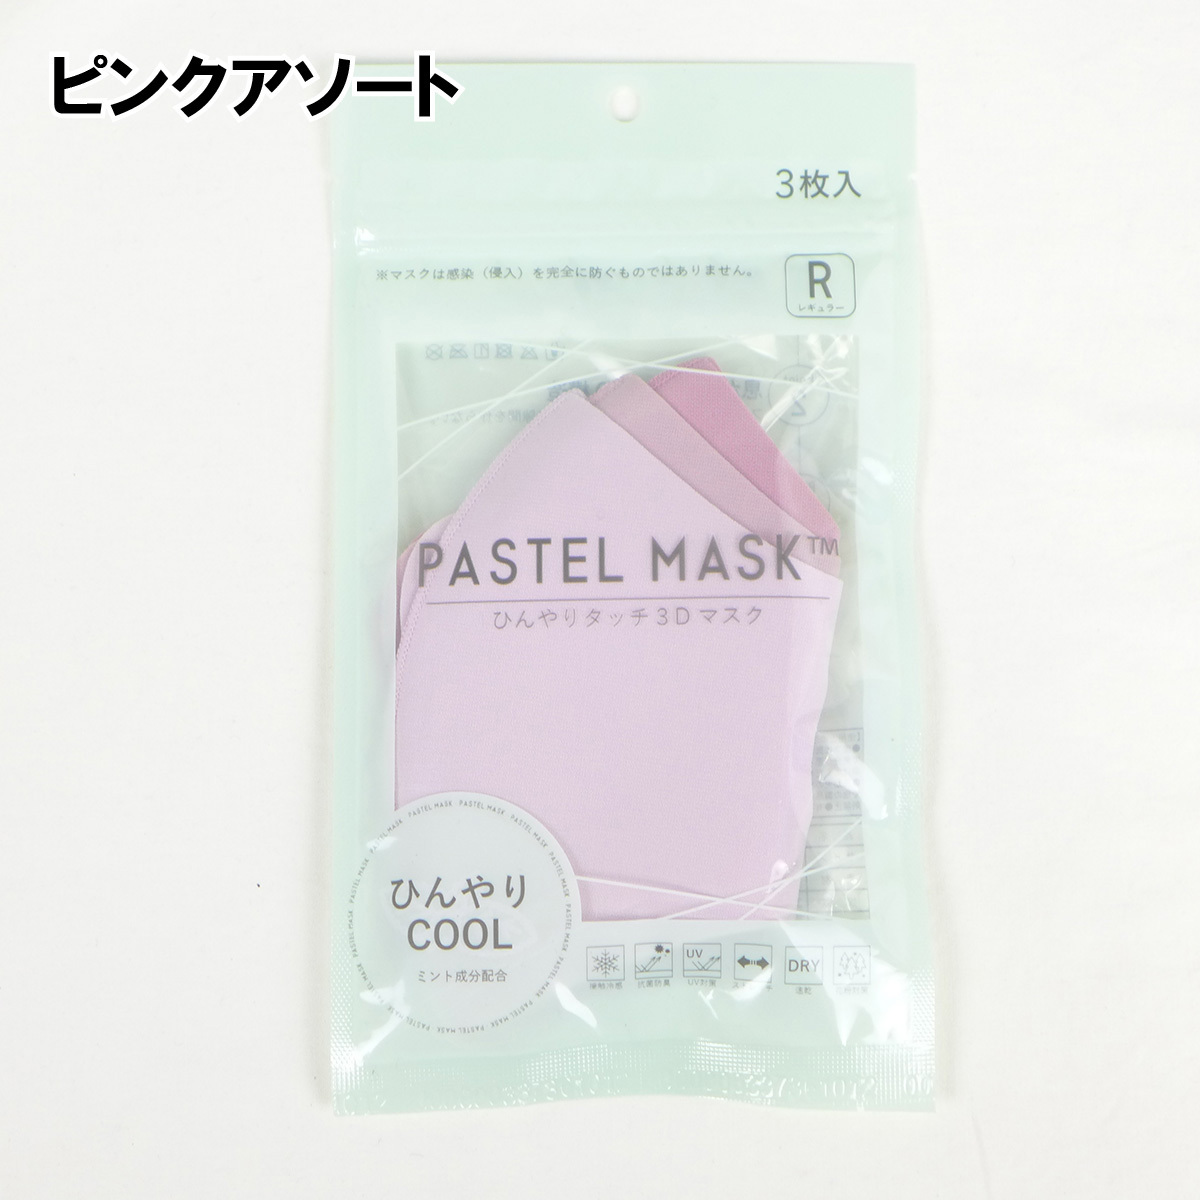 送料無料 Coolパステルマスク 3枚入り クロスプラス スモール レギュラー ラージ Pastel Mask 洗えるマスク 夏用マスク バラエティストアとらや 通販 Yahoo ショッピング